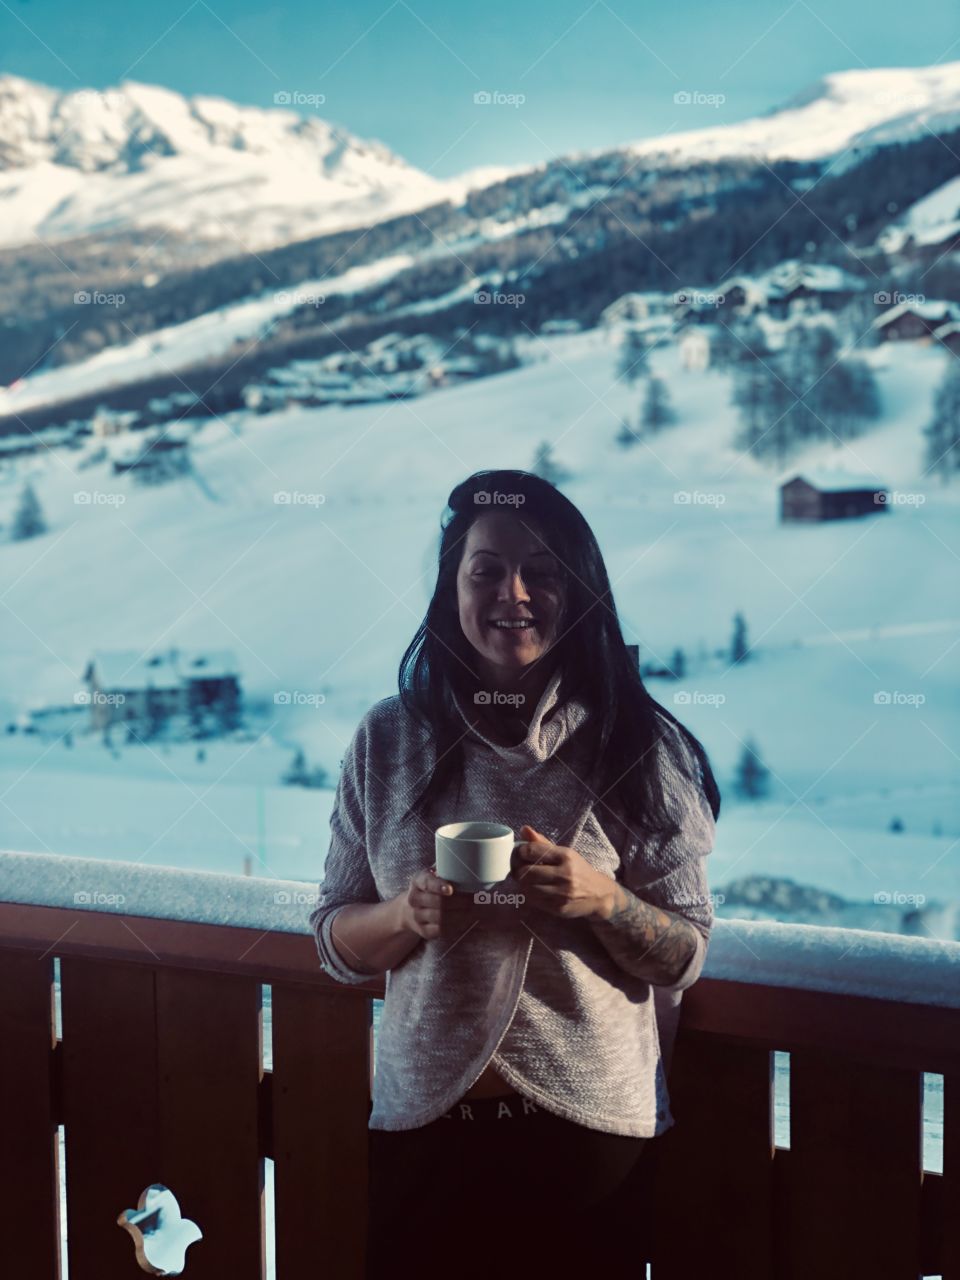 Tea break in the snowy mountains 